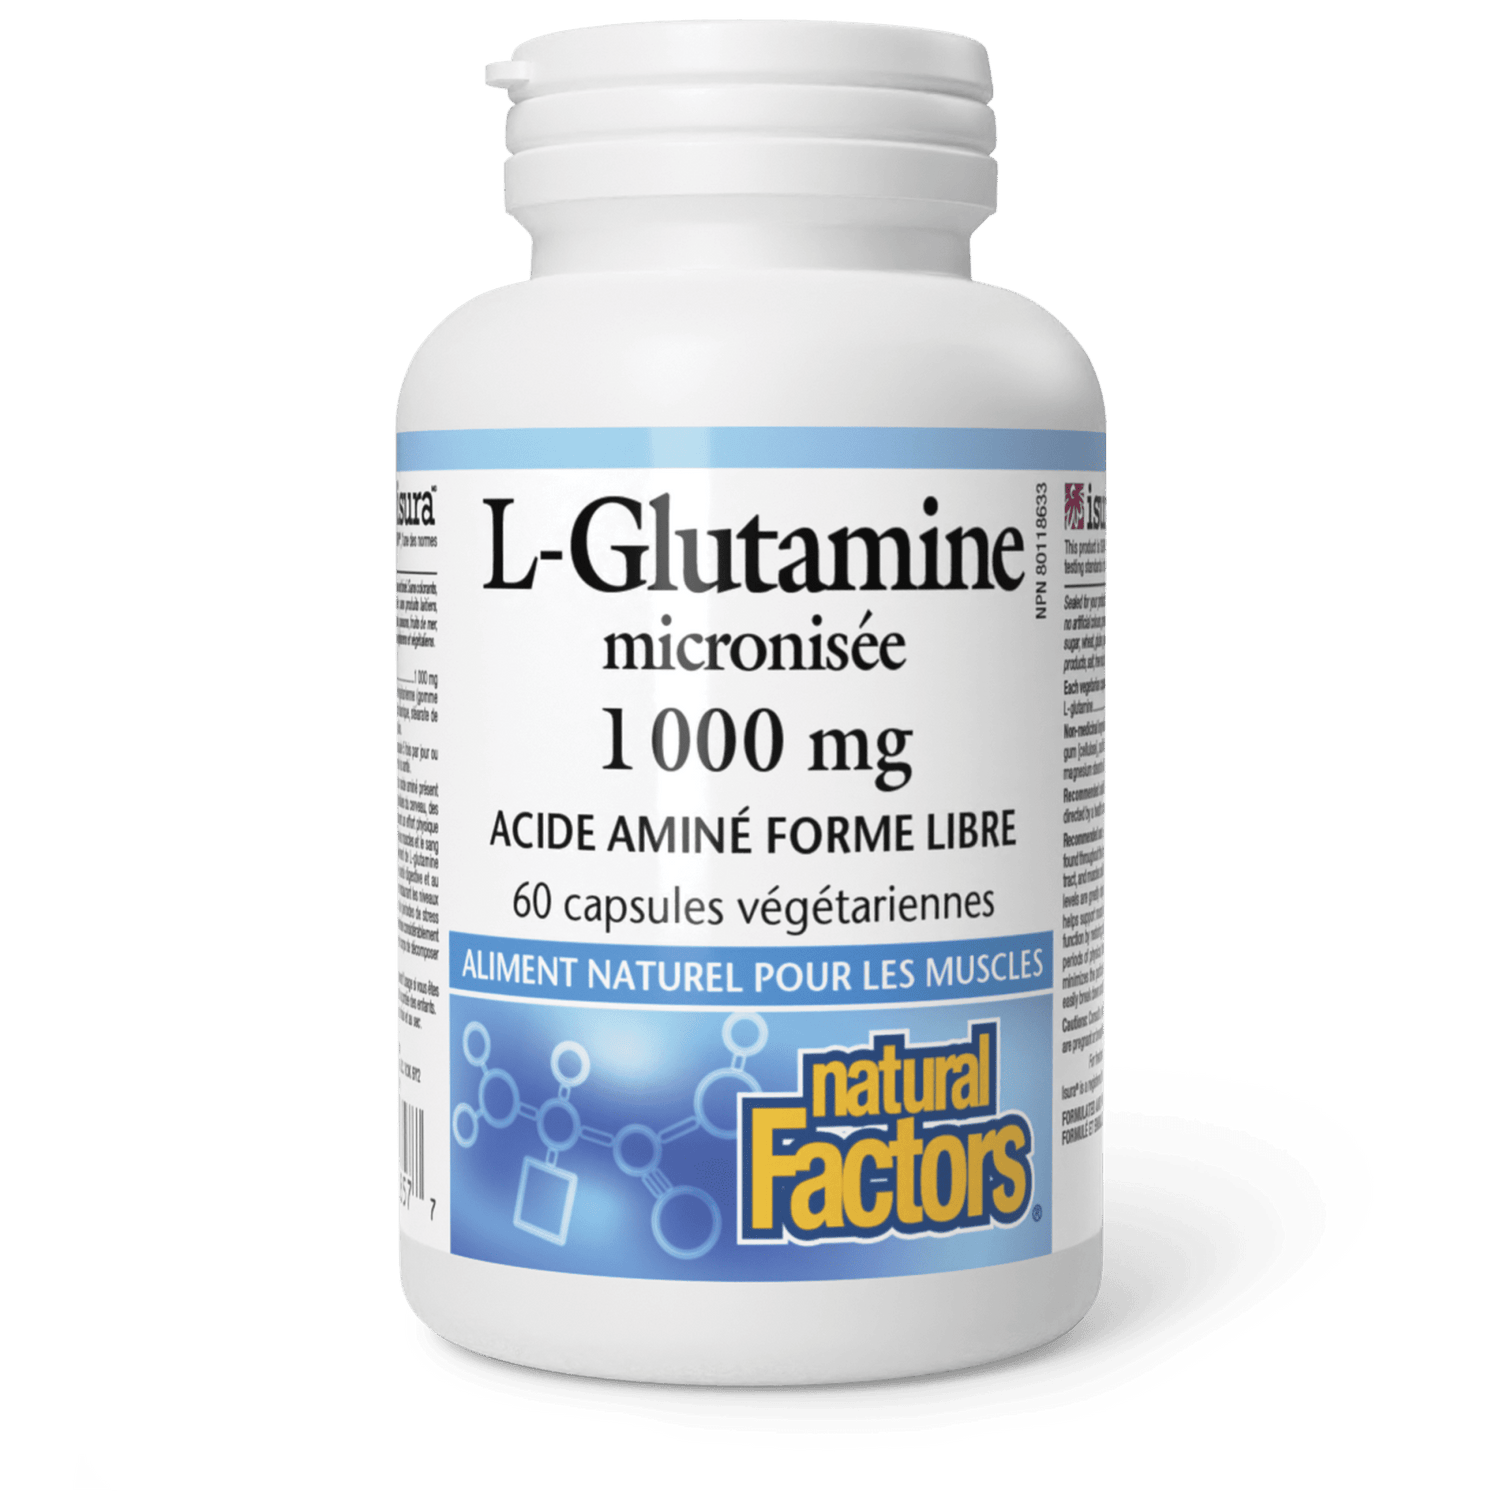 L-Glutamine micronisée 1 000 mg, Natural Factors|v|image|2857